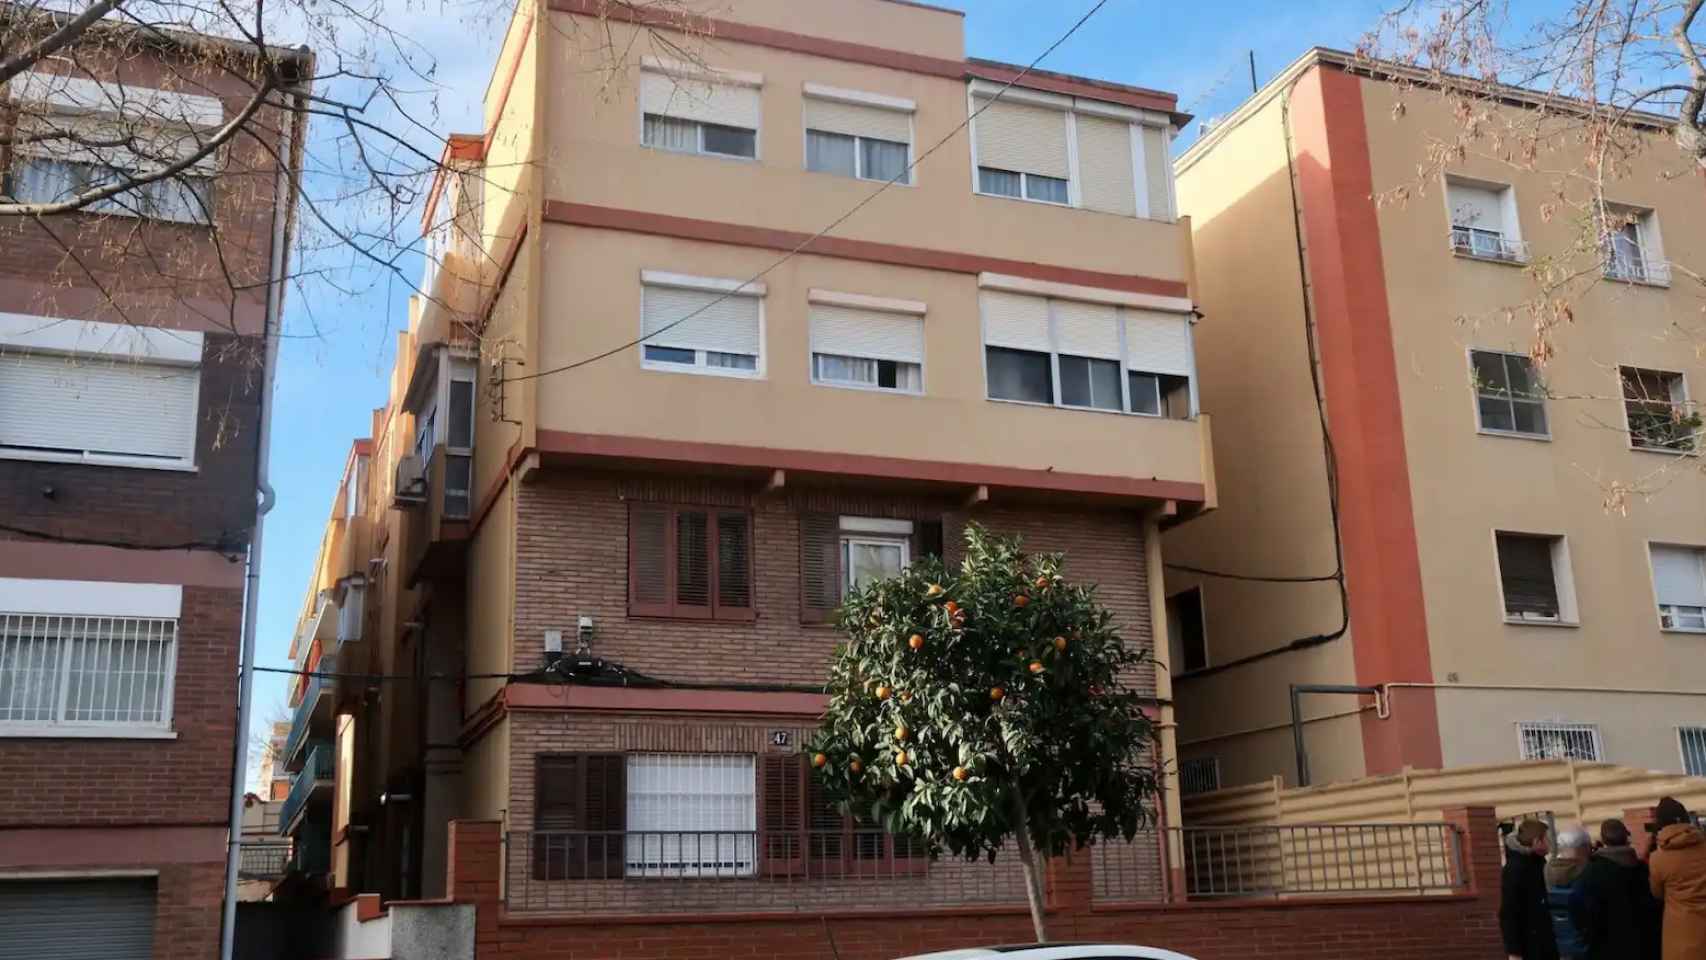 La vivienda del barrio de Horta de Barcelona donde han aparecido los cuerpos sin vida de los pequeños y su padre